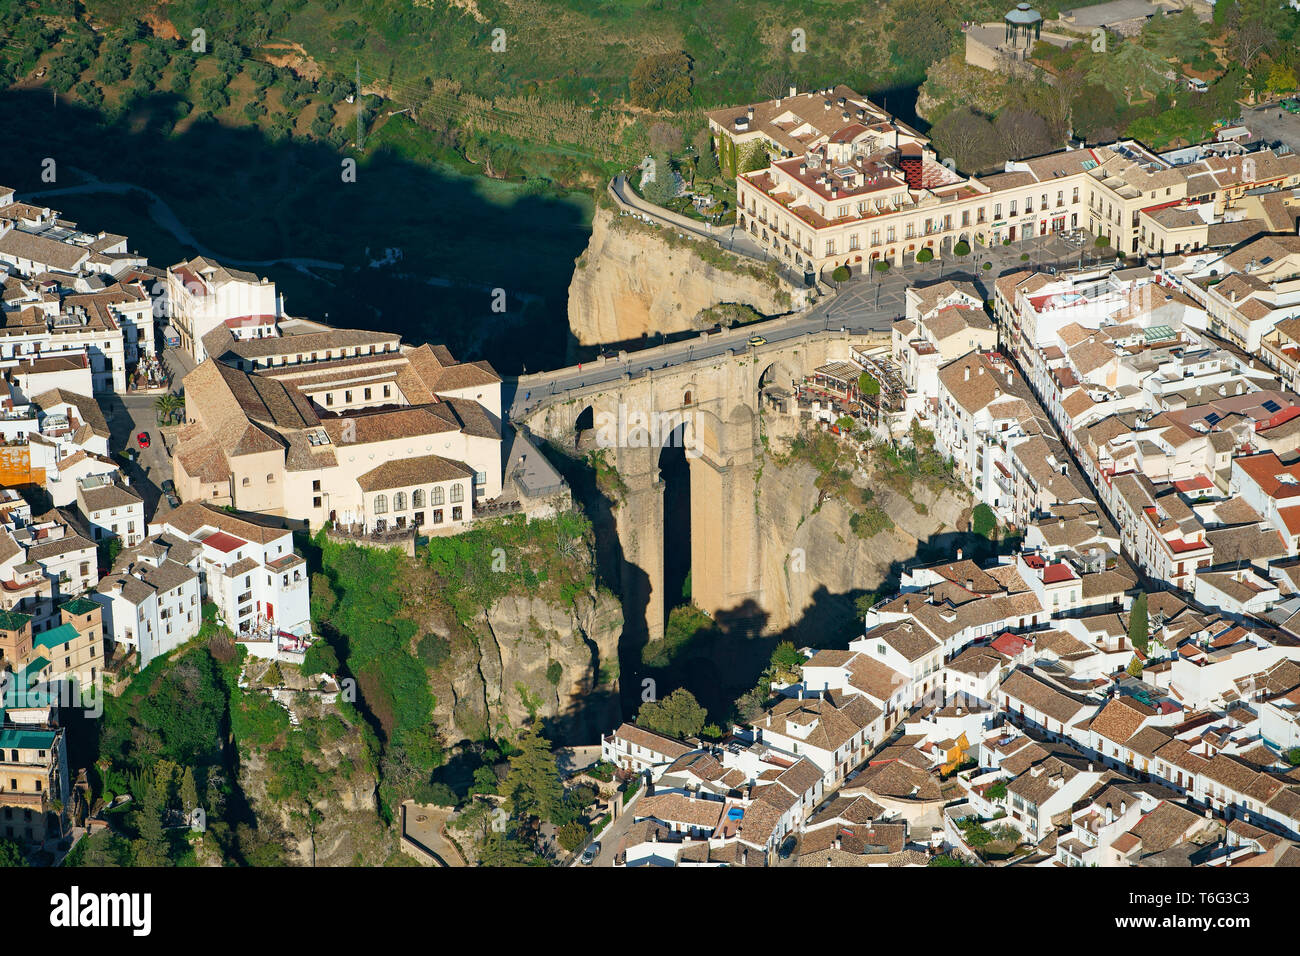 VUE AÉRIENNE.Ville historique pittoresque divisée par un profond canyon.Ronda, Andalousie, Espagne. Banque D'Images